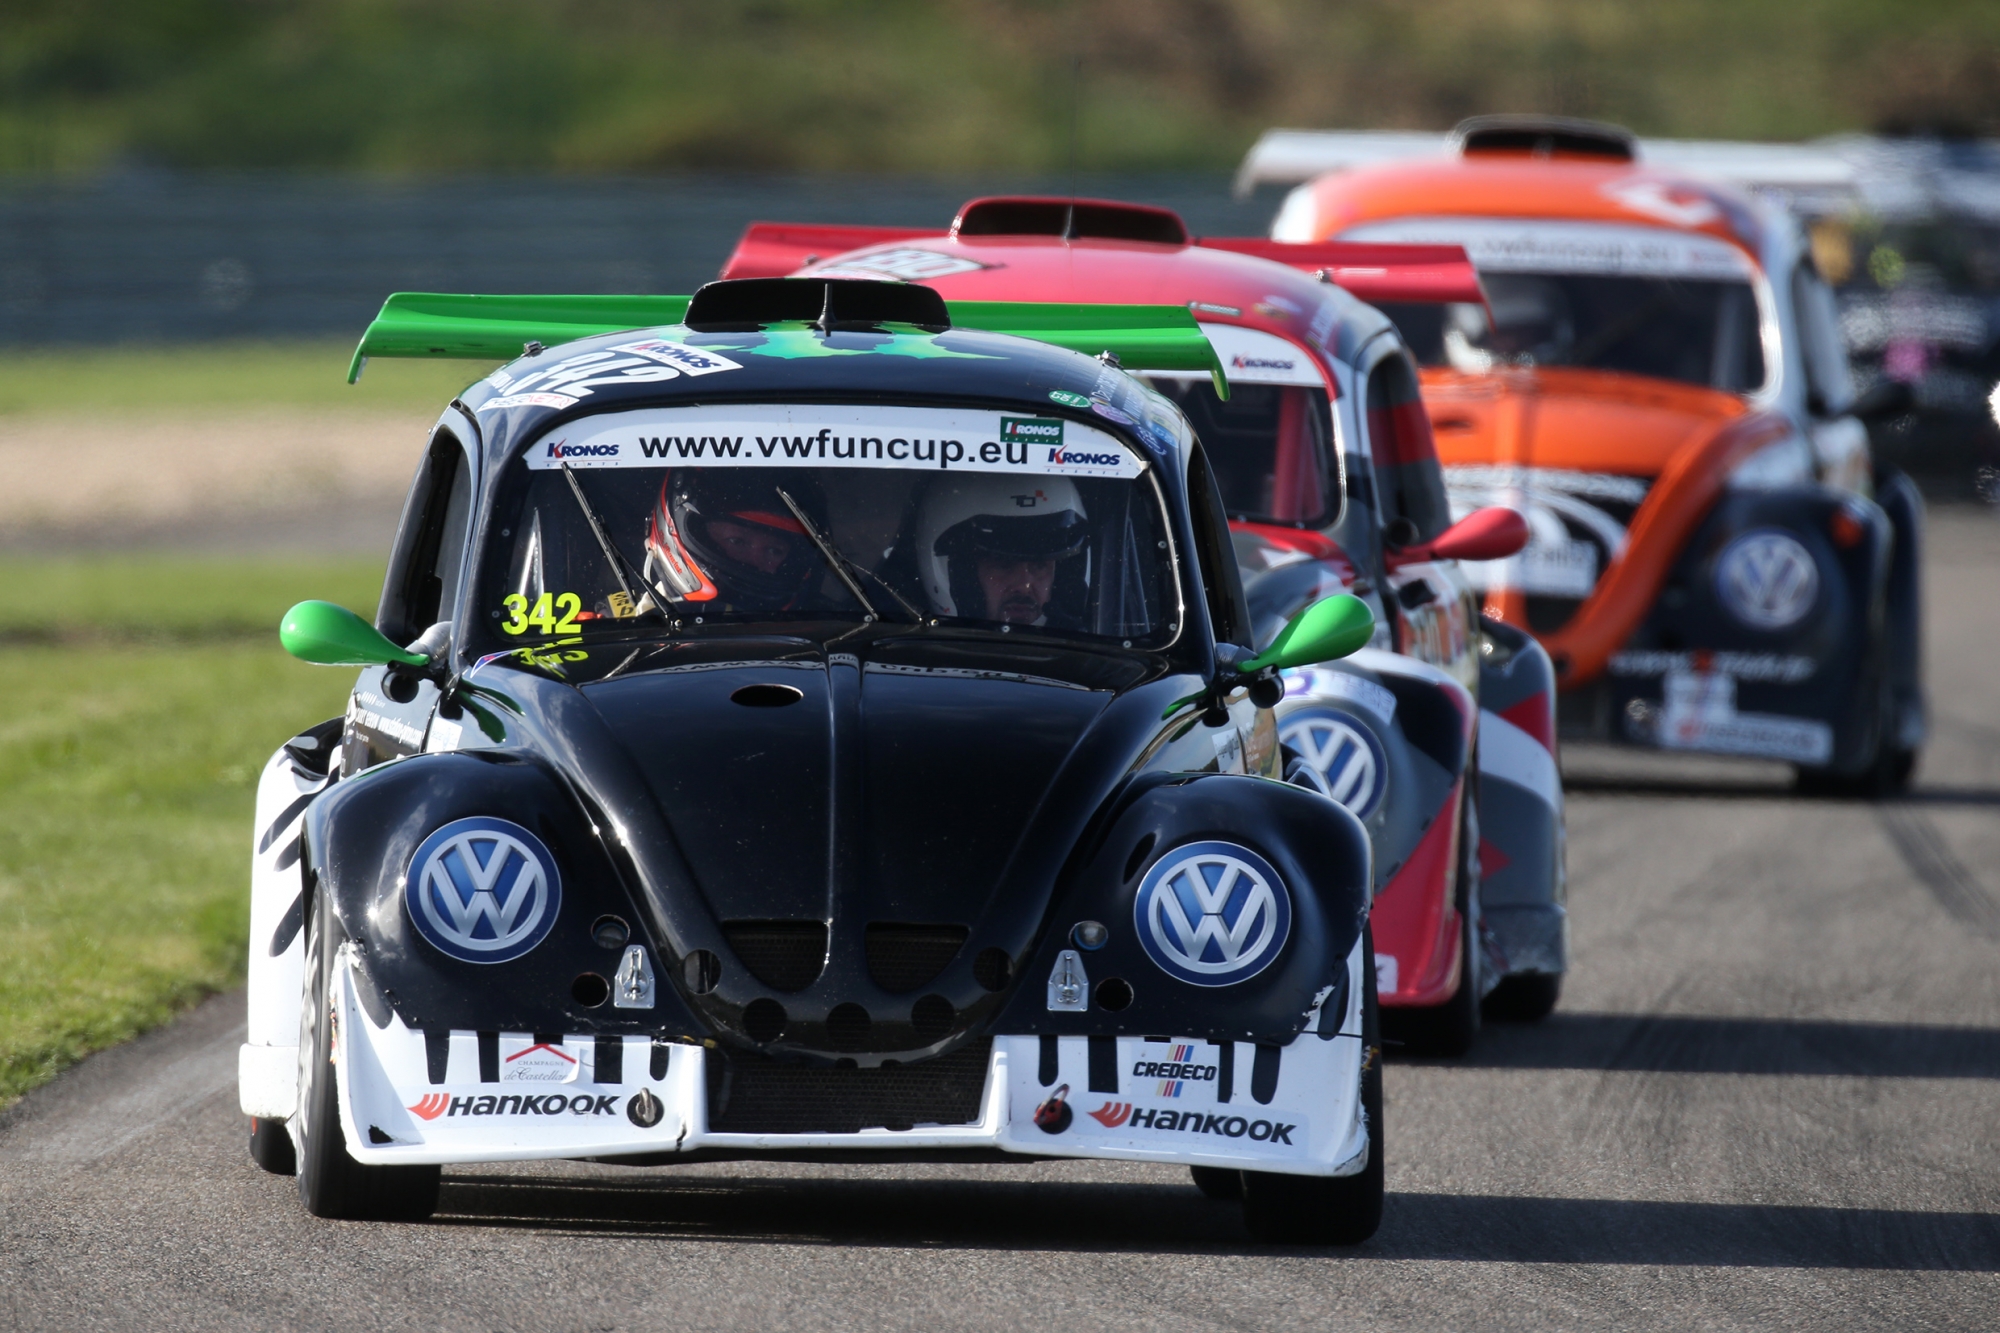 image 6 - VW Fun Cup powered by Hankook : un début de saison en fanfare à Mettet !